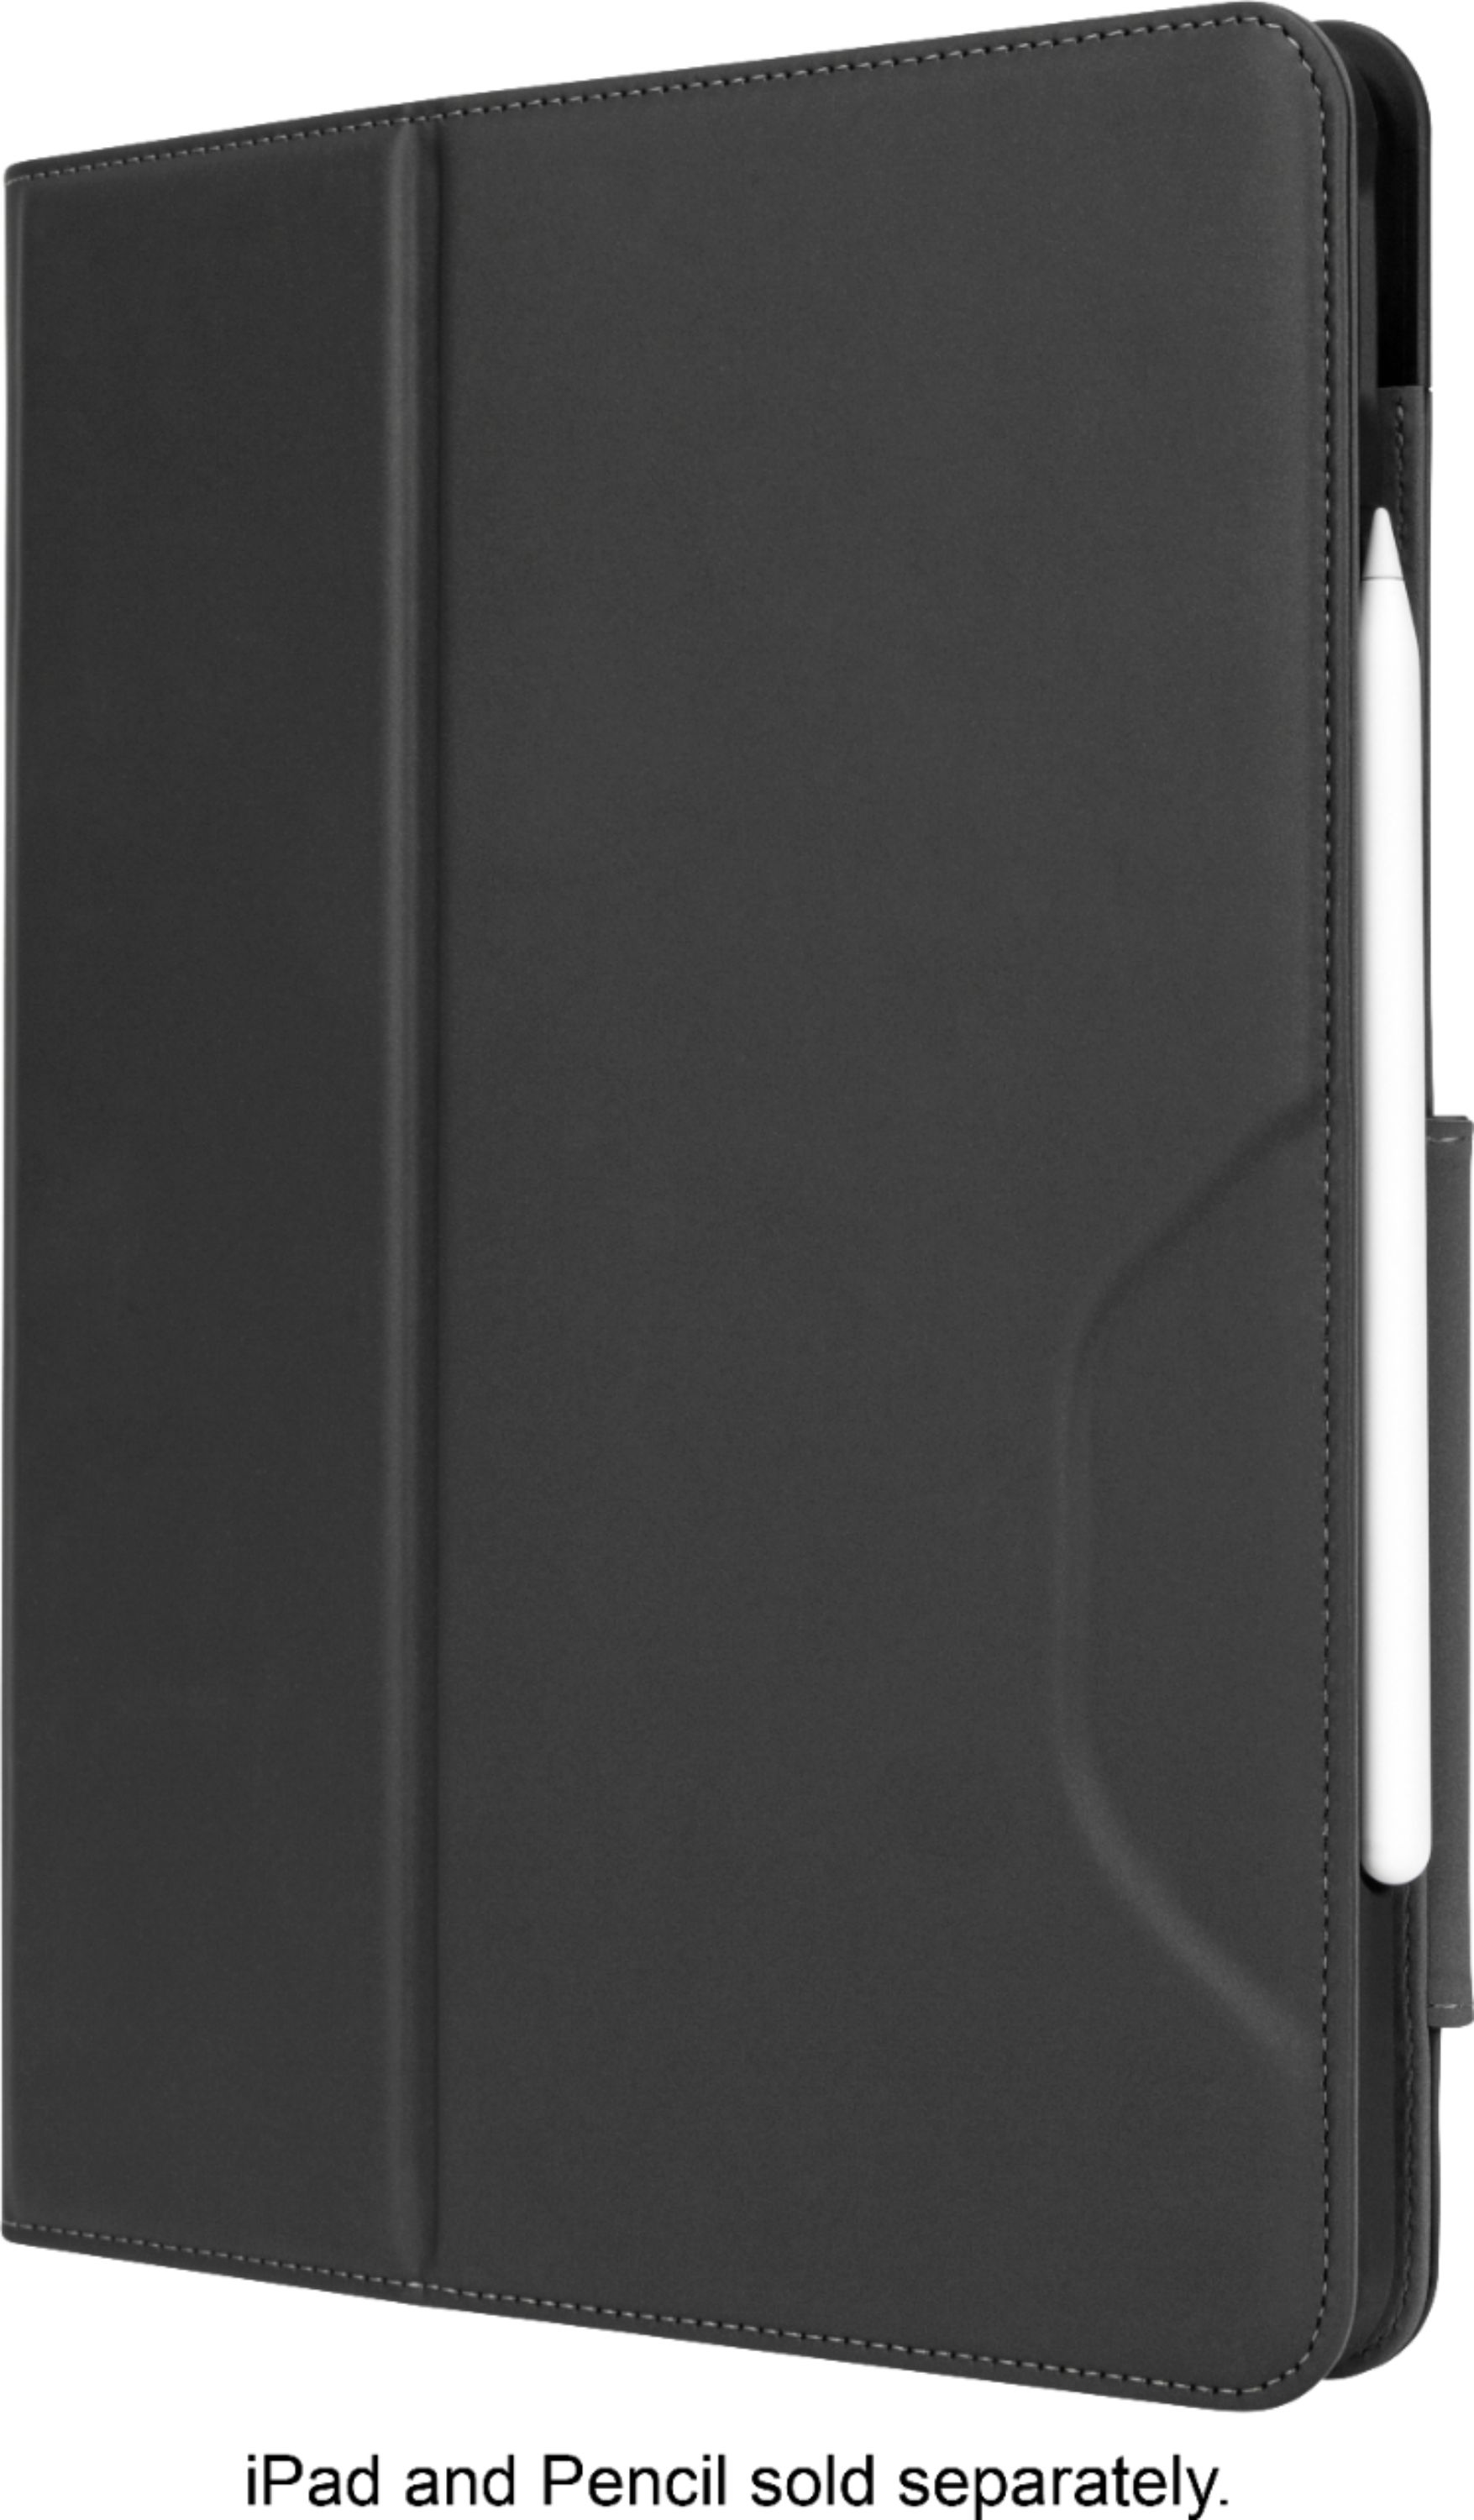 Classic Louis Vuitton iPad Pro 10.5 (2017) Folio Case